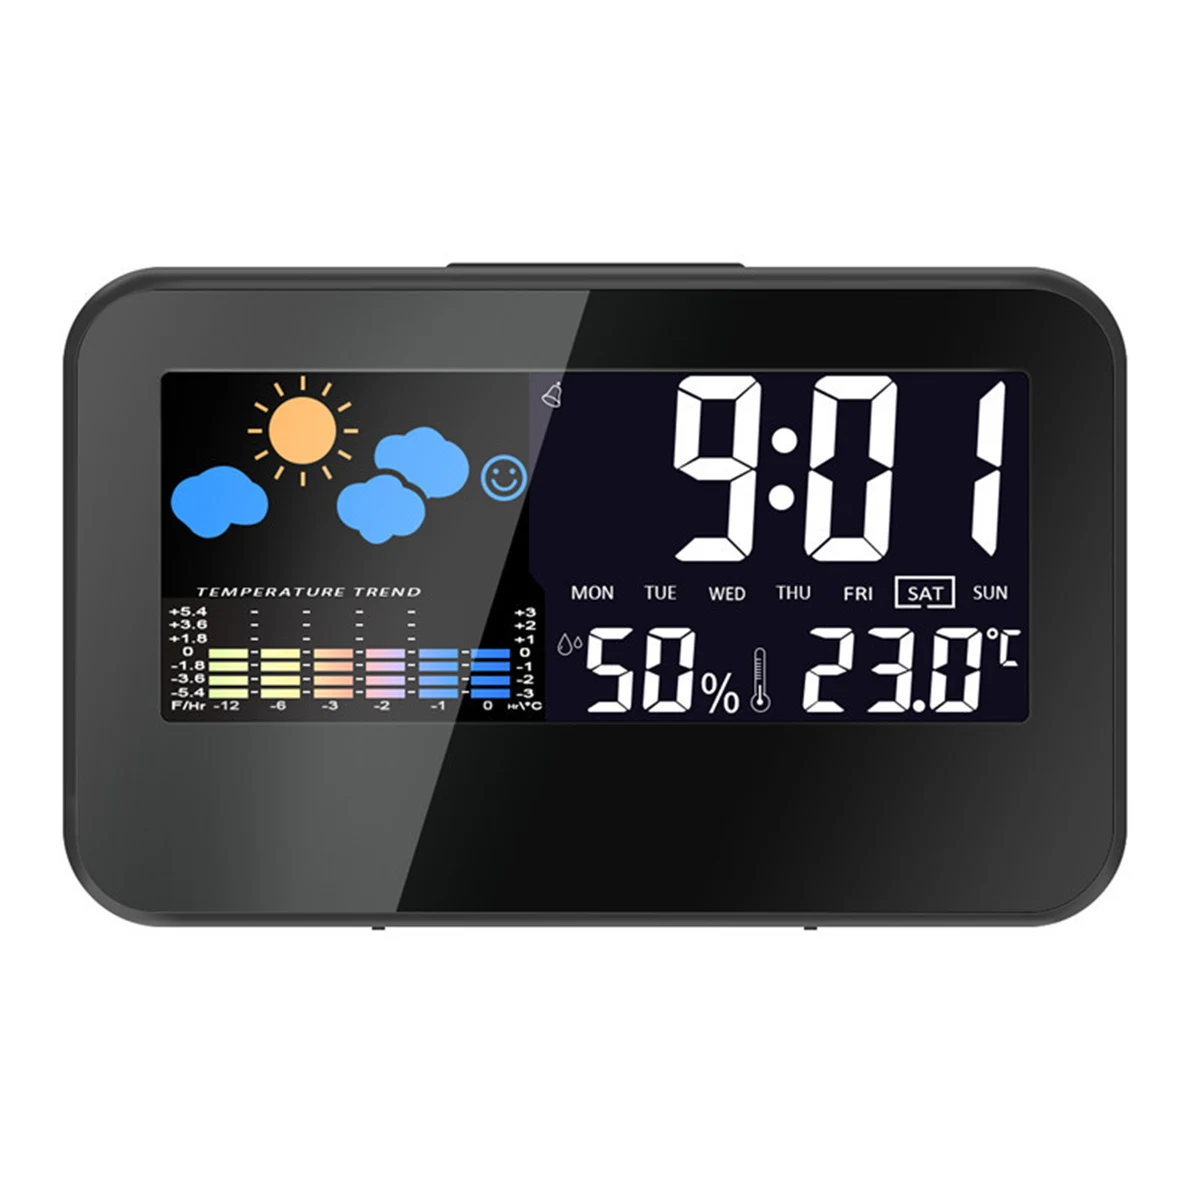 Цифровая метеостанция с термометром, гигрометром, будильником и красочным светодиодным дисплеем, умным звуковым контролем, календарем и подсветкой.